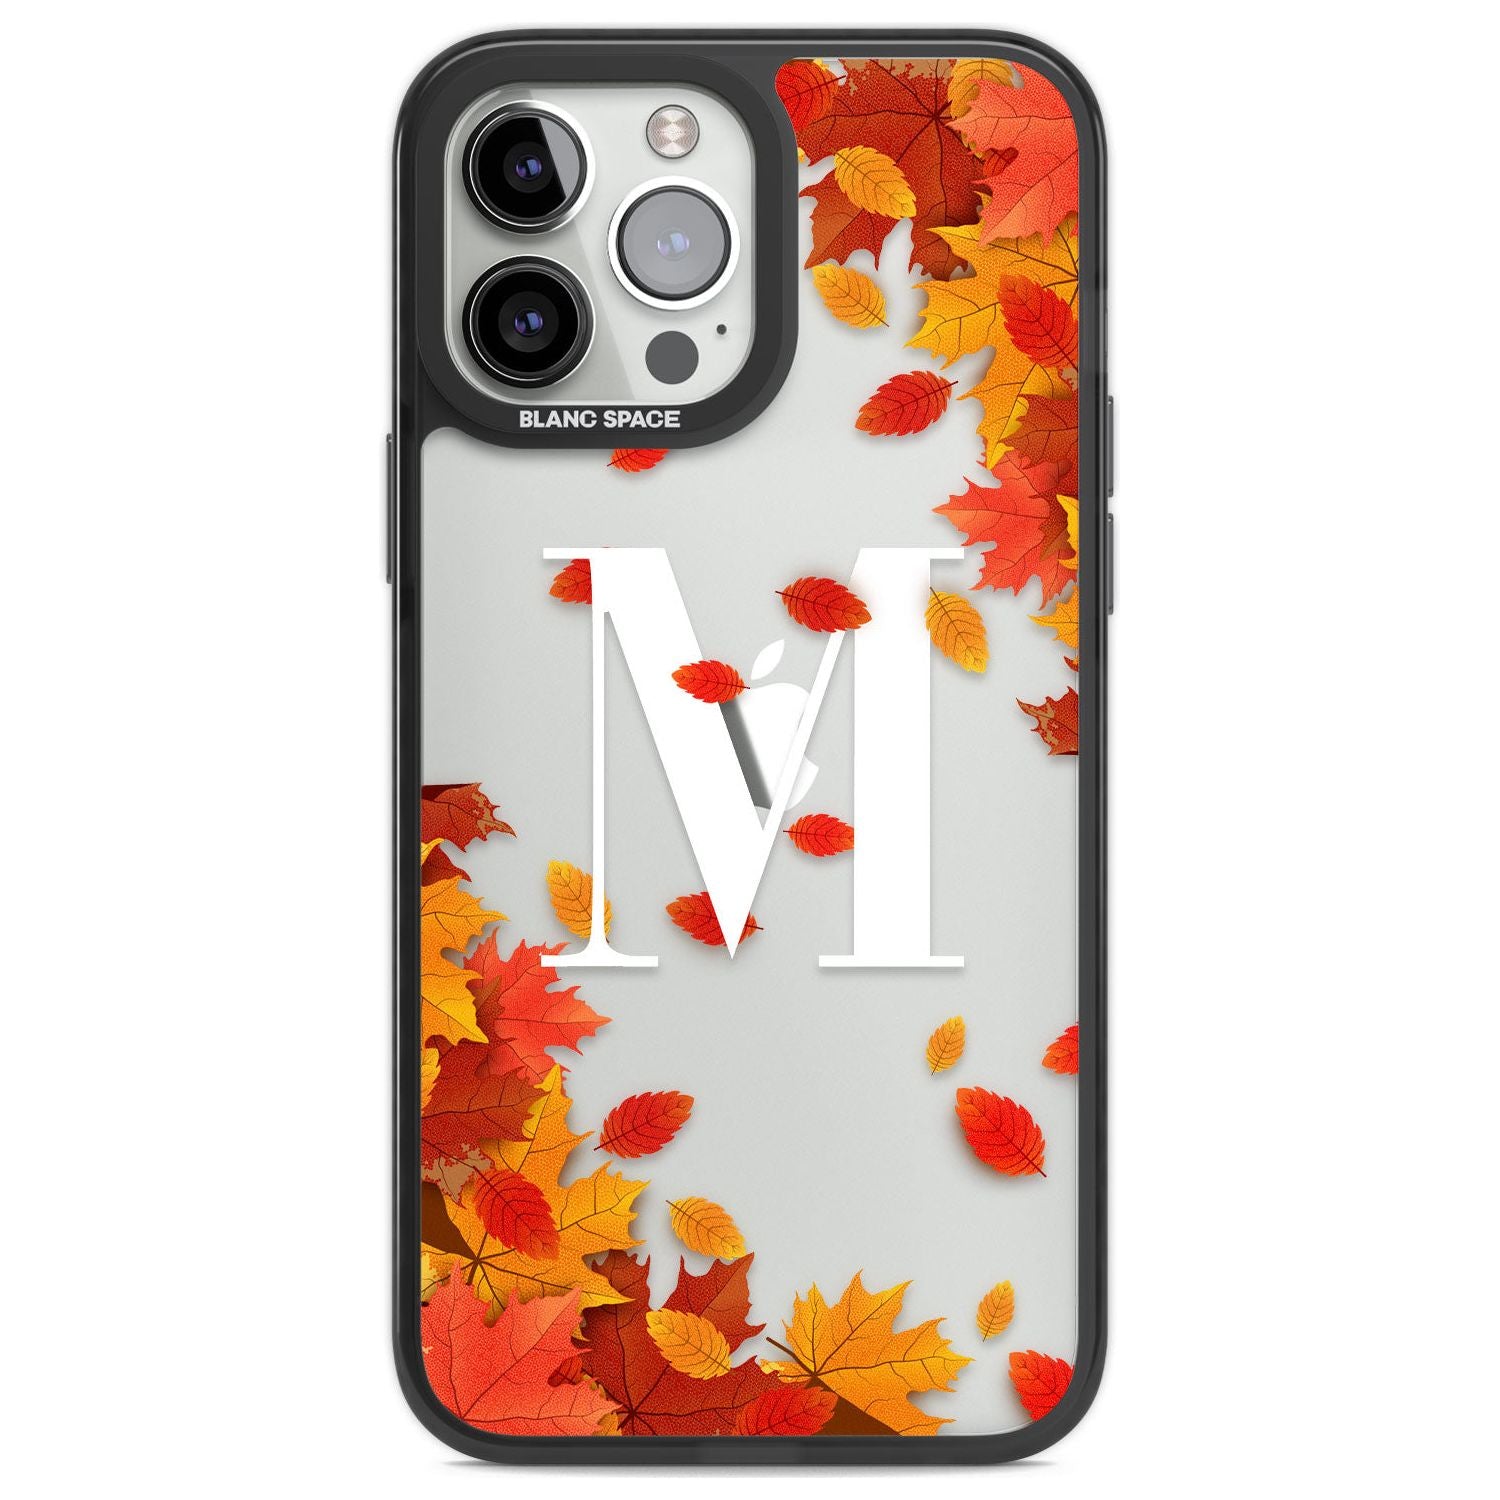 Personalised Monogram Autumn Leaves Custom Phone Case iPhone 13 Pro Max / Black Impact Case,iPhone 14 Pro Max / Black Impact Case Blanc Space